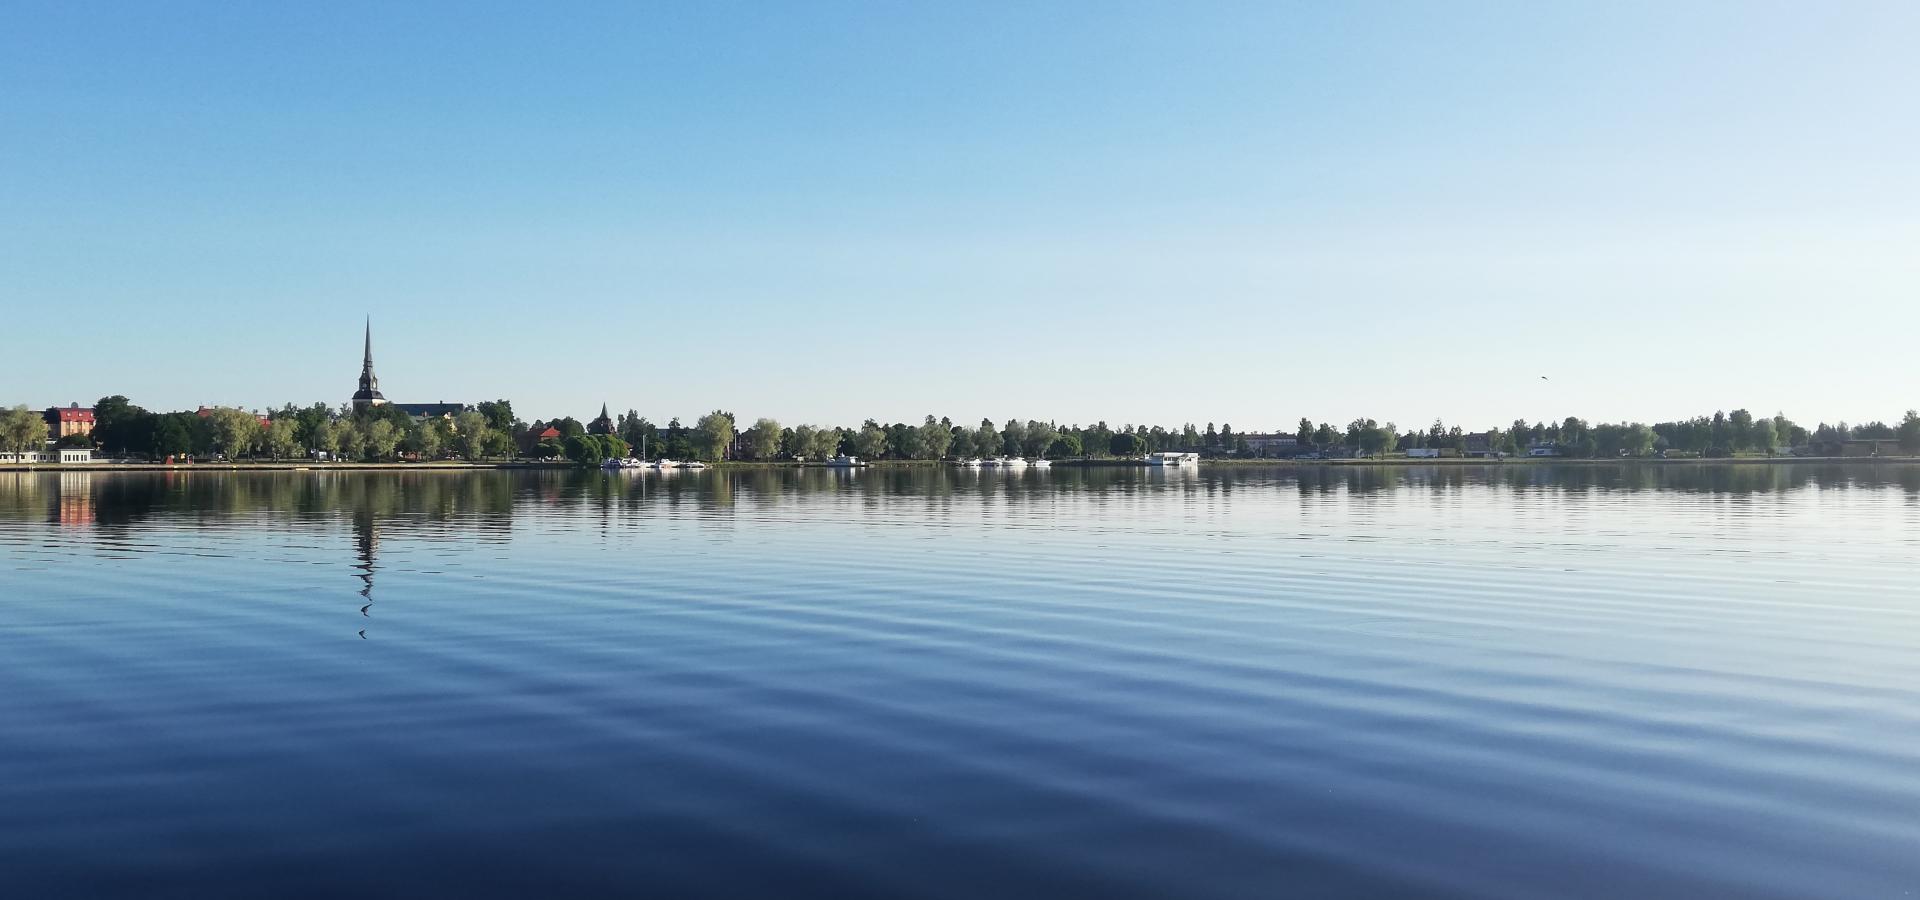 Blå himmel och blått vatten, träd och ett kyrktorn speglas i sjön.